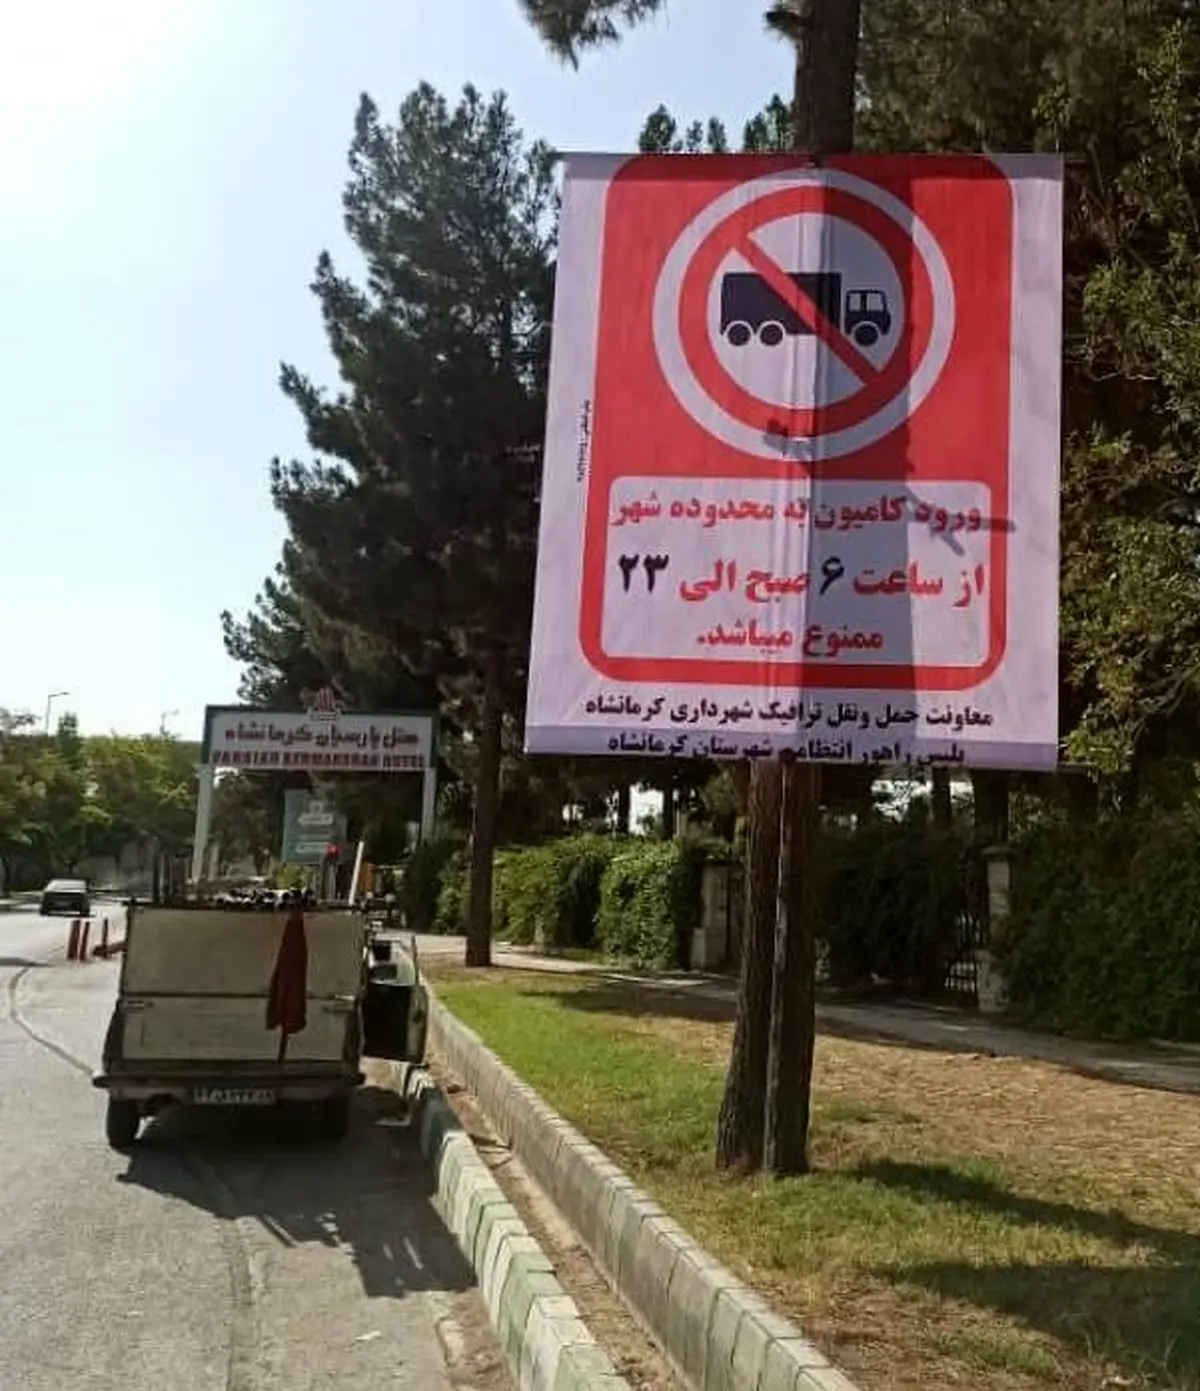 ‍ ورود کامیون به معابر شهری ممنوع



